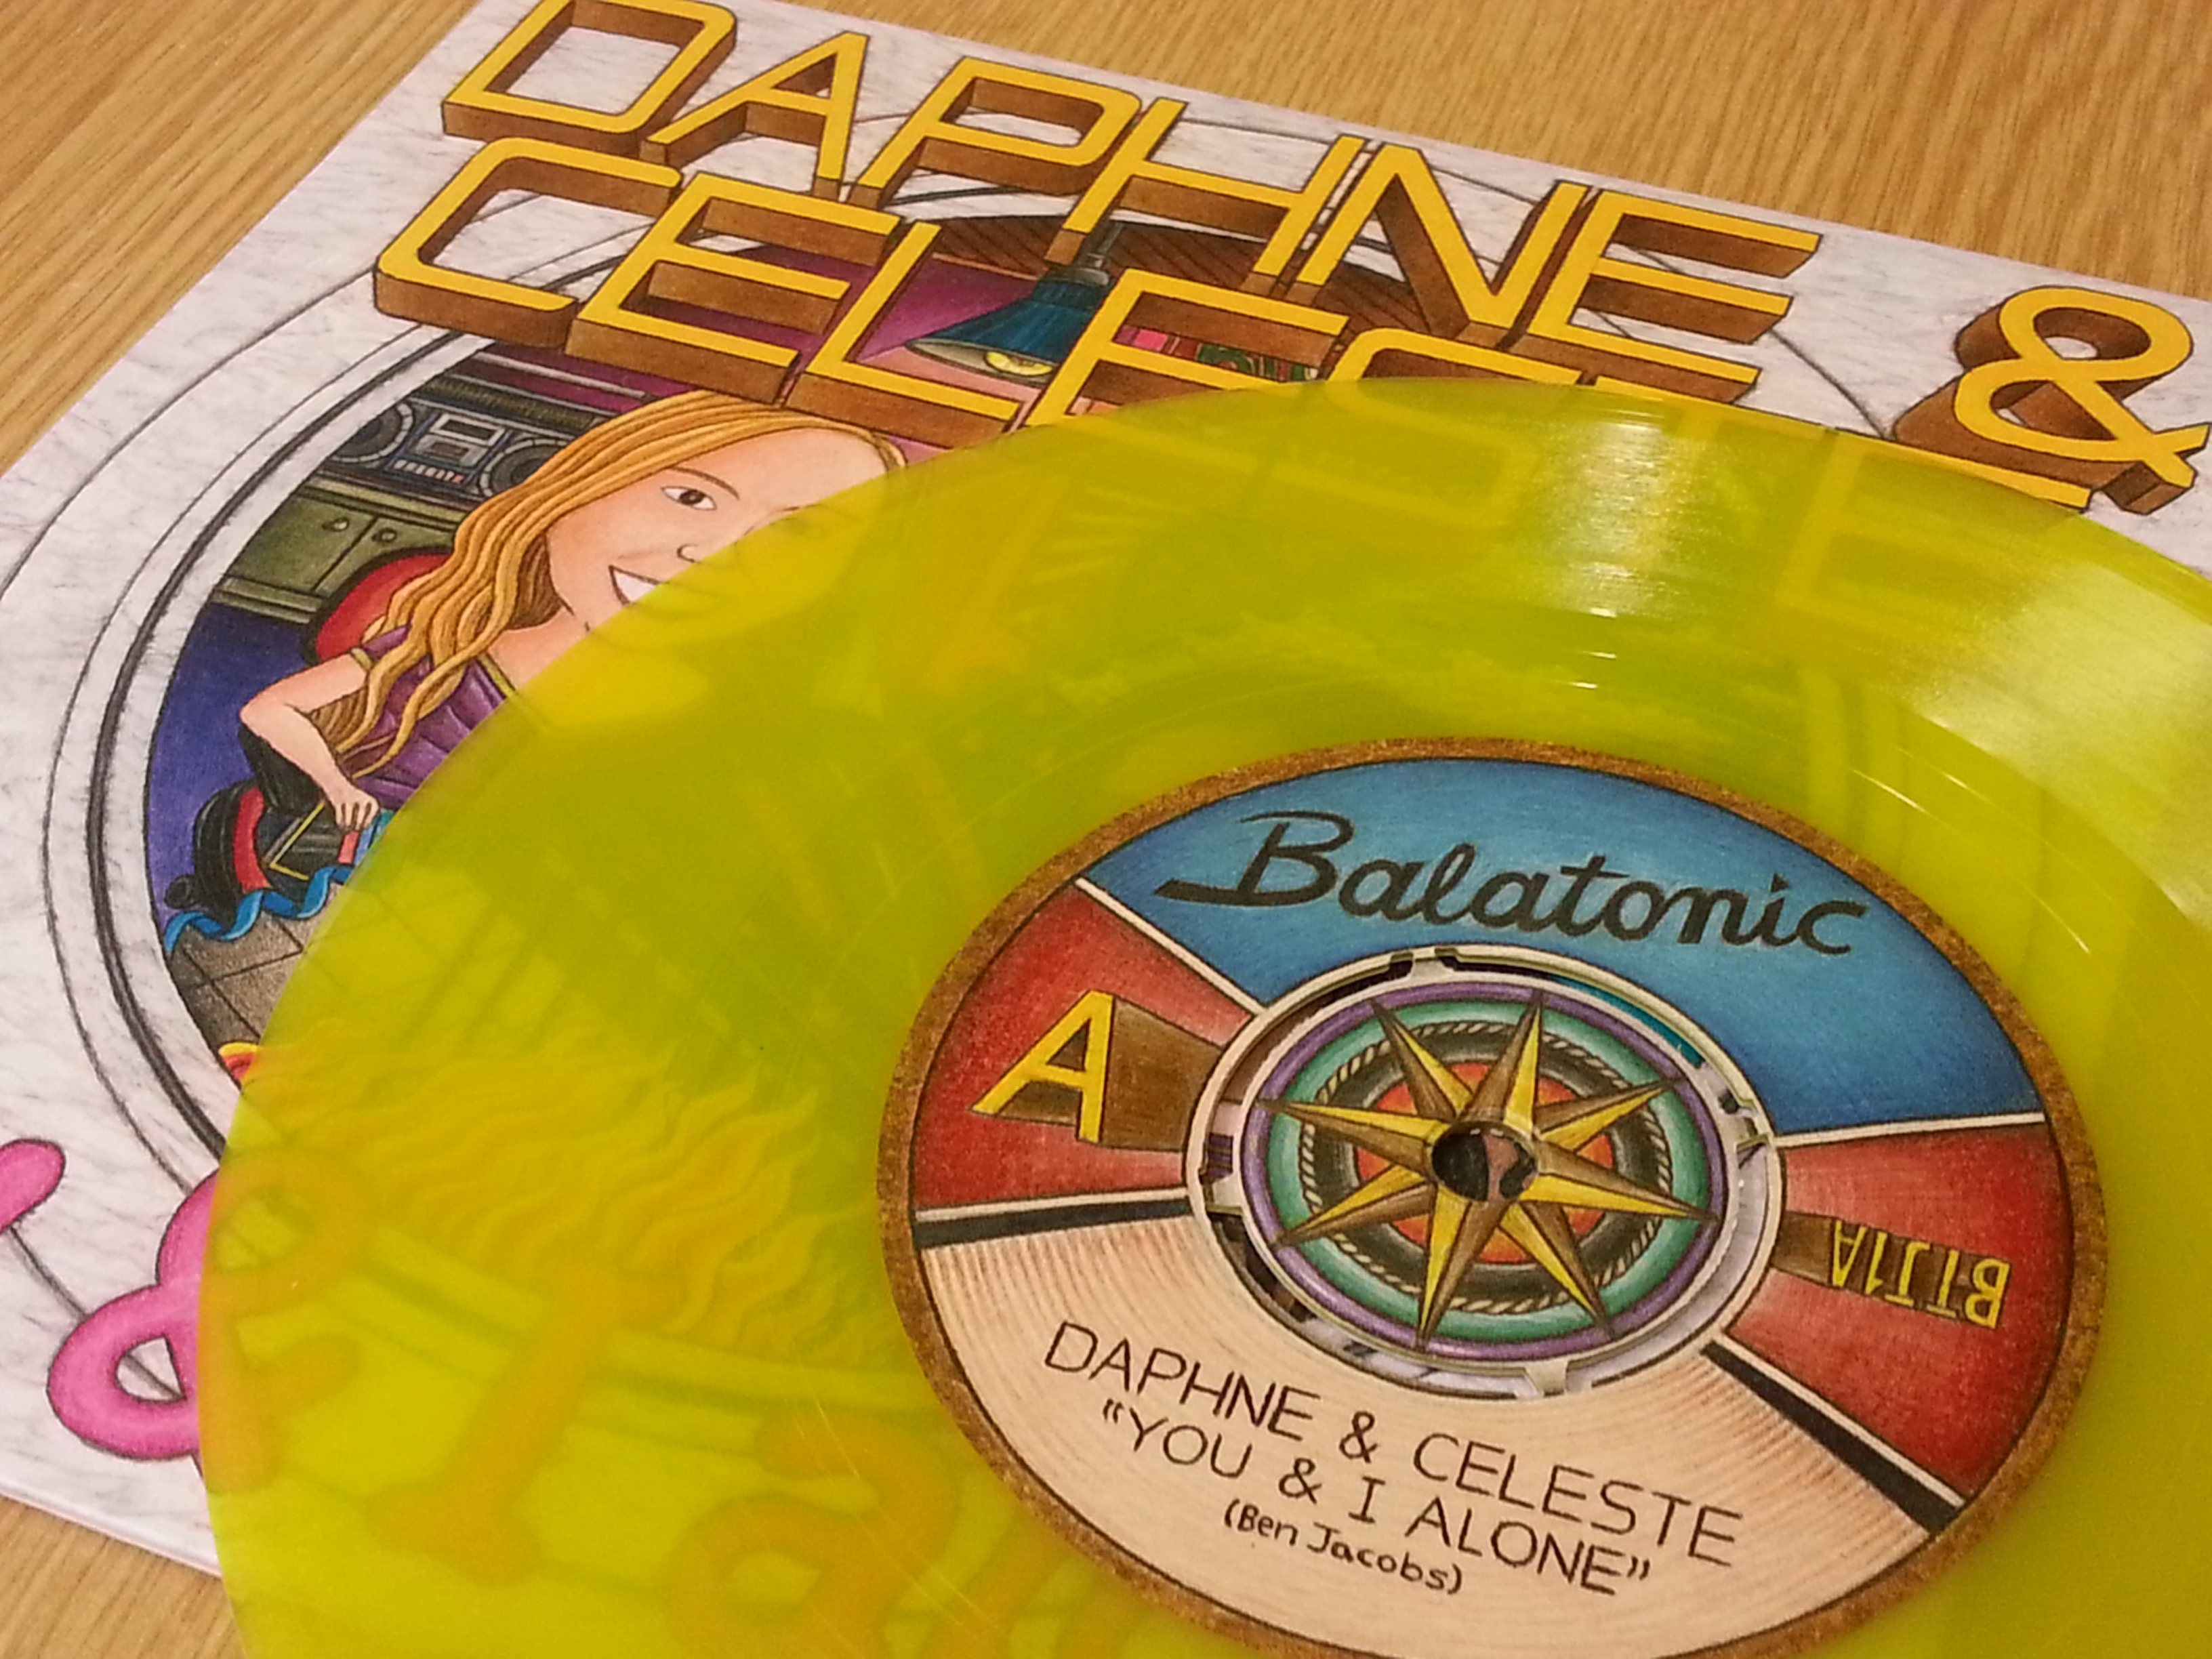 daphne & celeste produce a new 7" vinyl